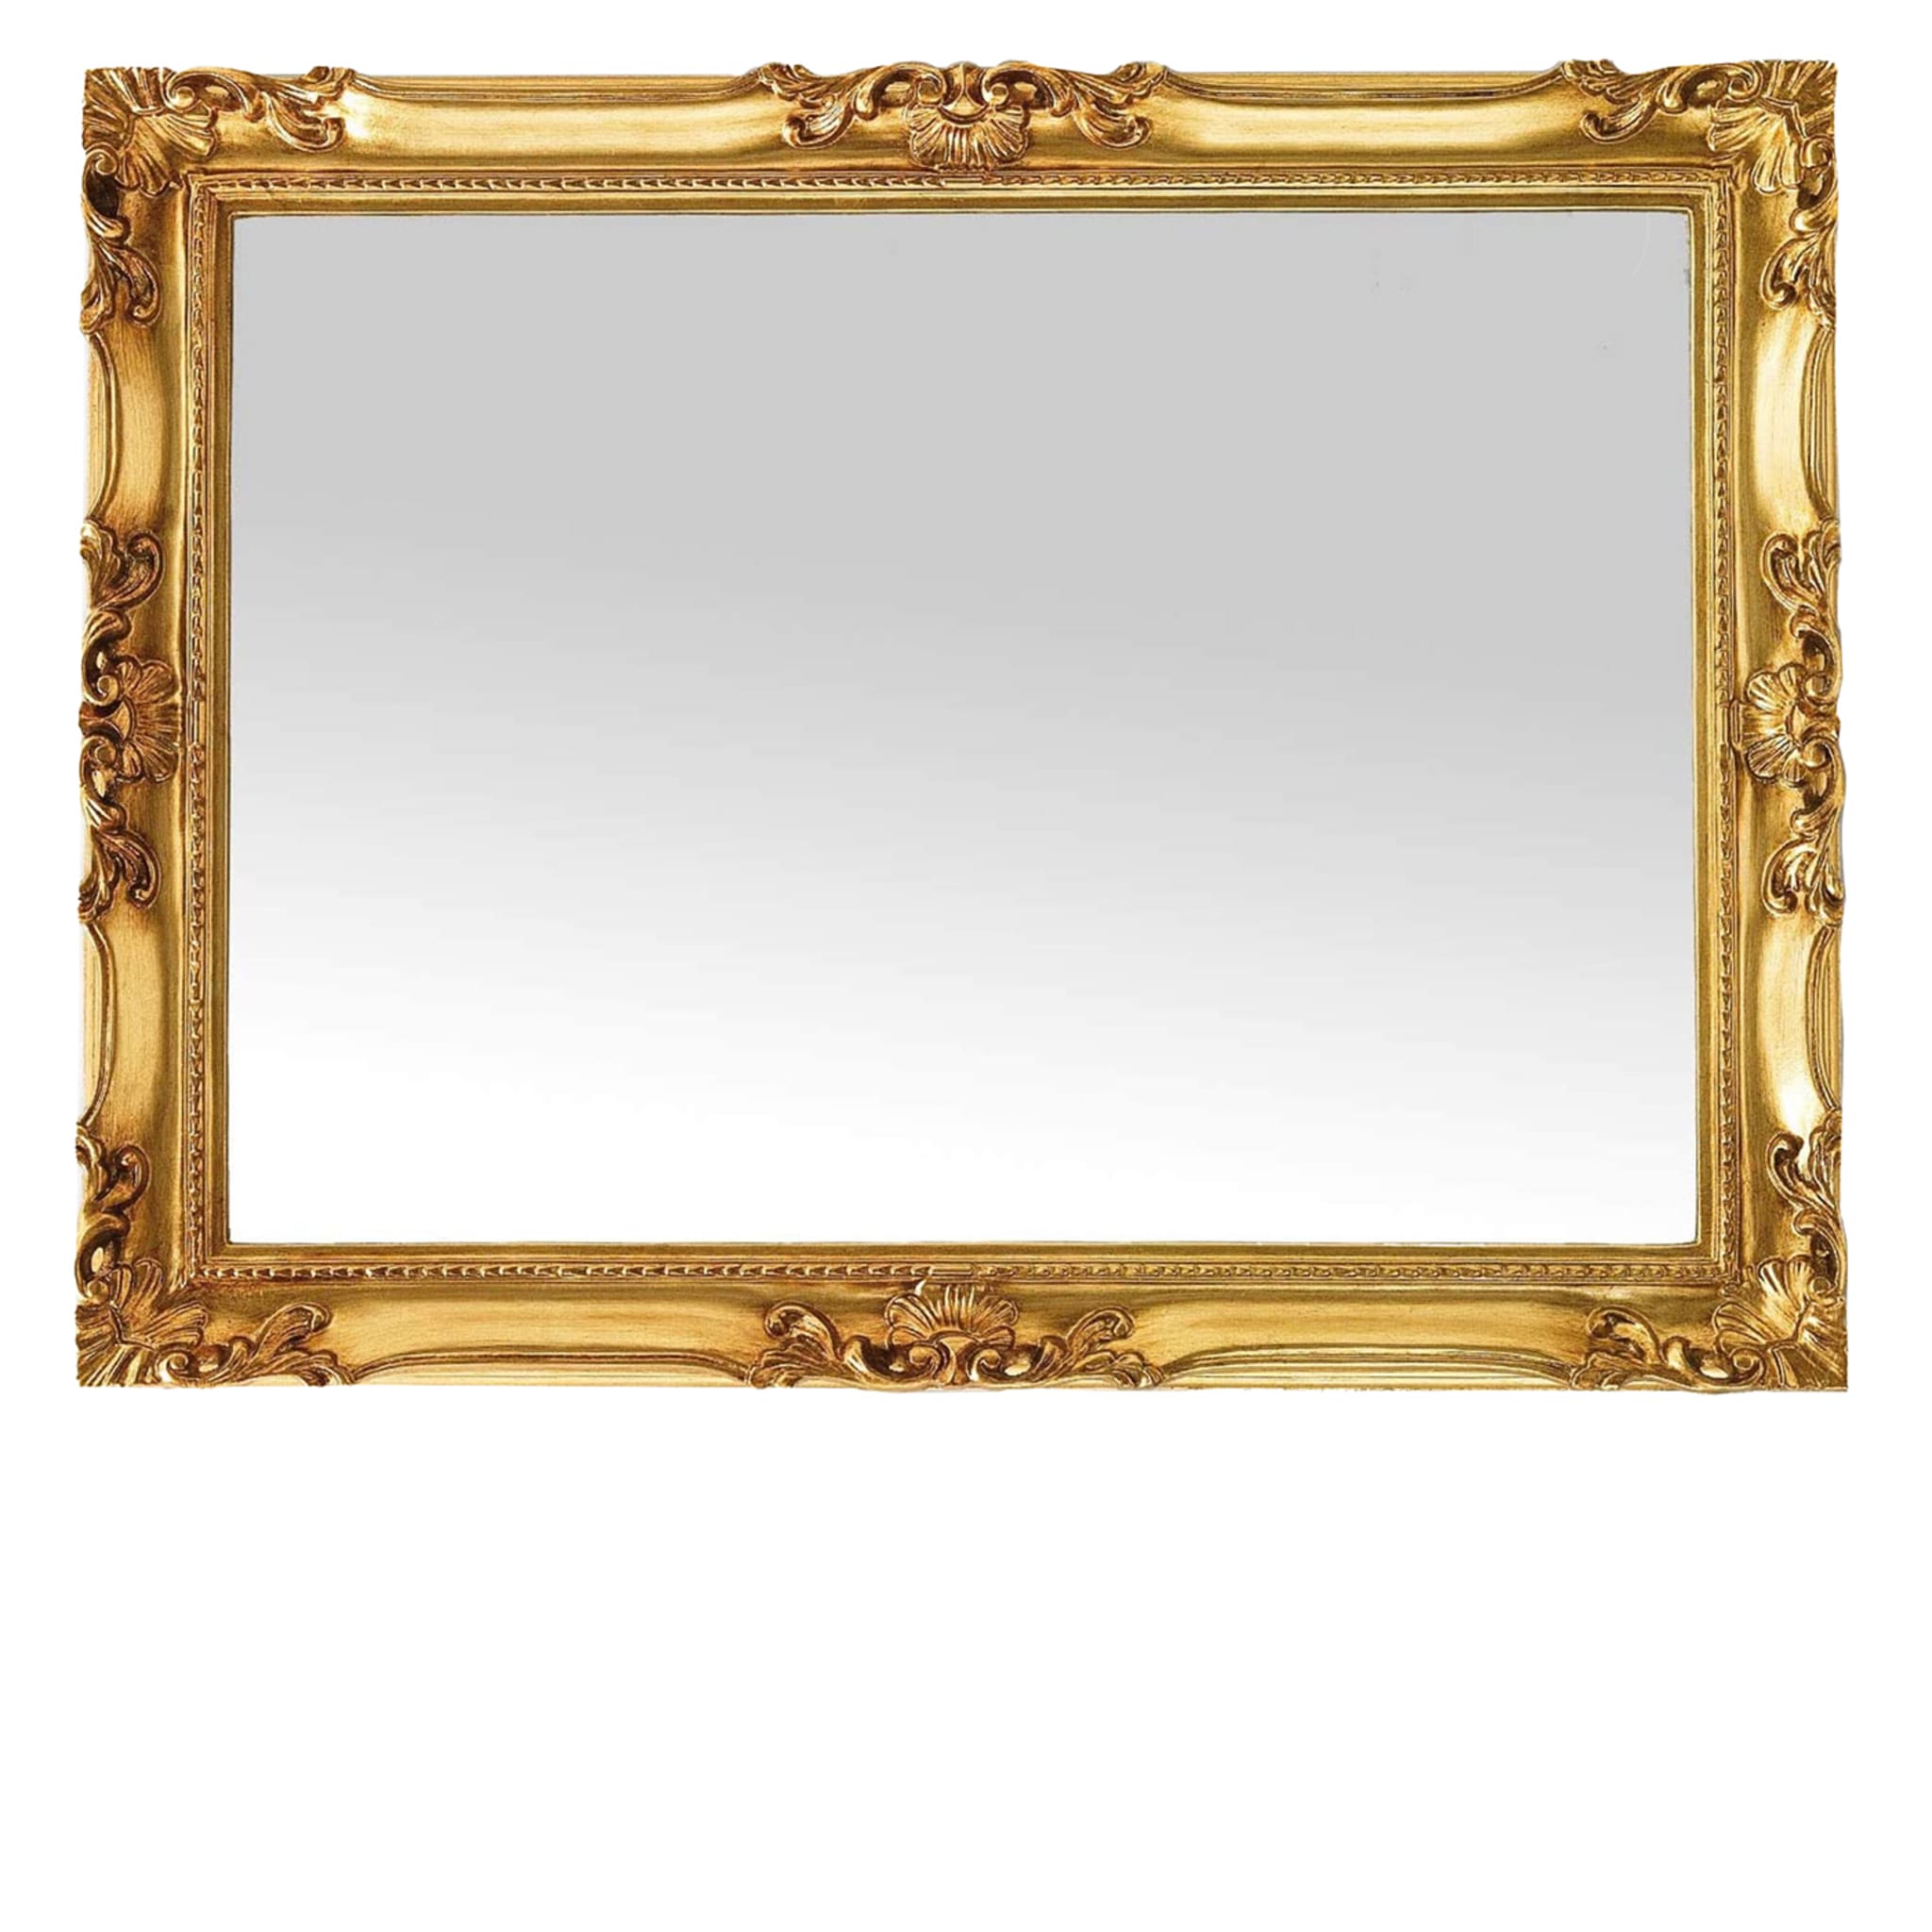 Specchio da parete in foglia d'oro anticata in stile barocco francese Delphine - Vista principale